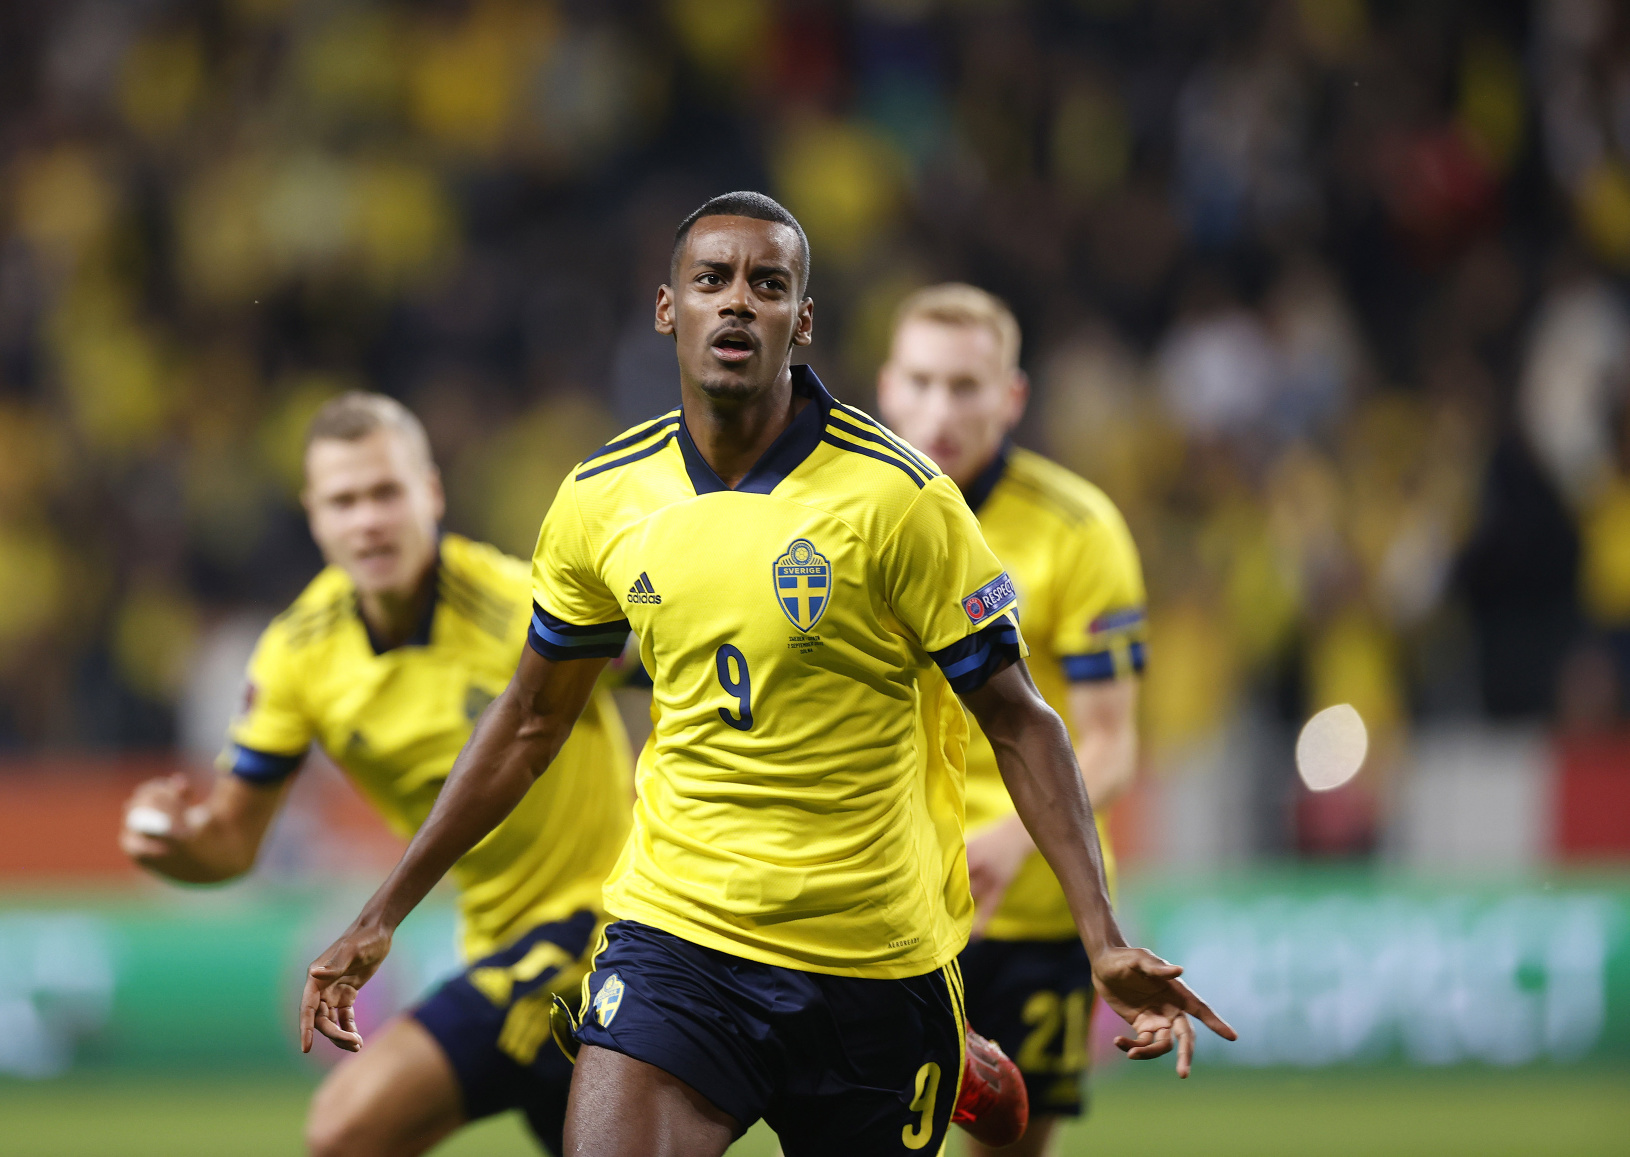 Hráči Švédska oslavujú gól